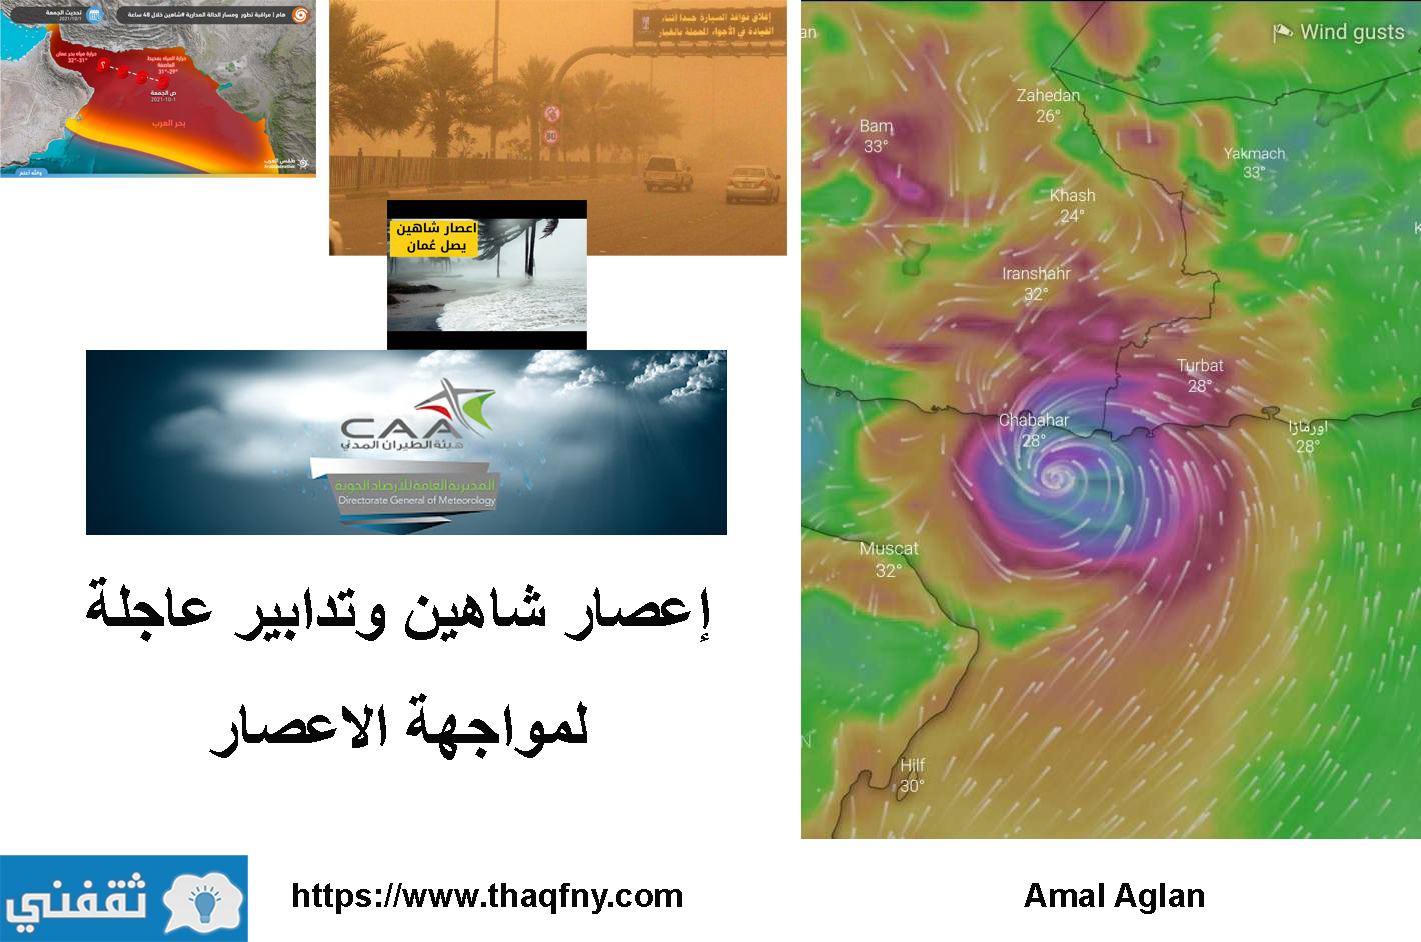 إعصار شاهين وتدابير عاجلة في عمان والإمارات لمواجهة الإعصار في دول الخليج العربي